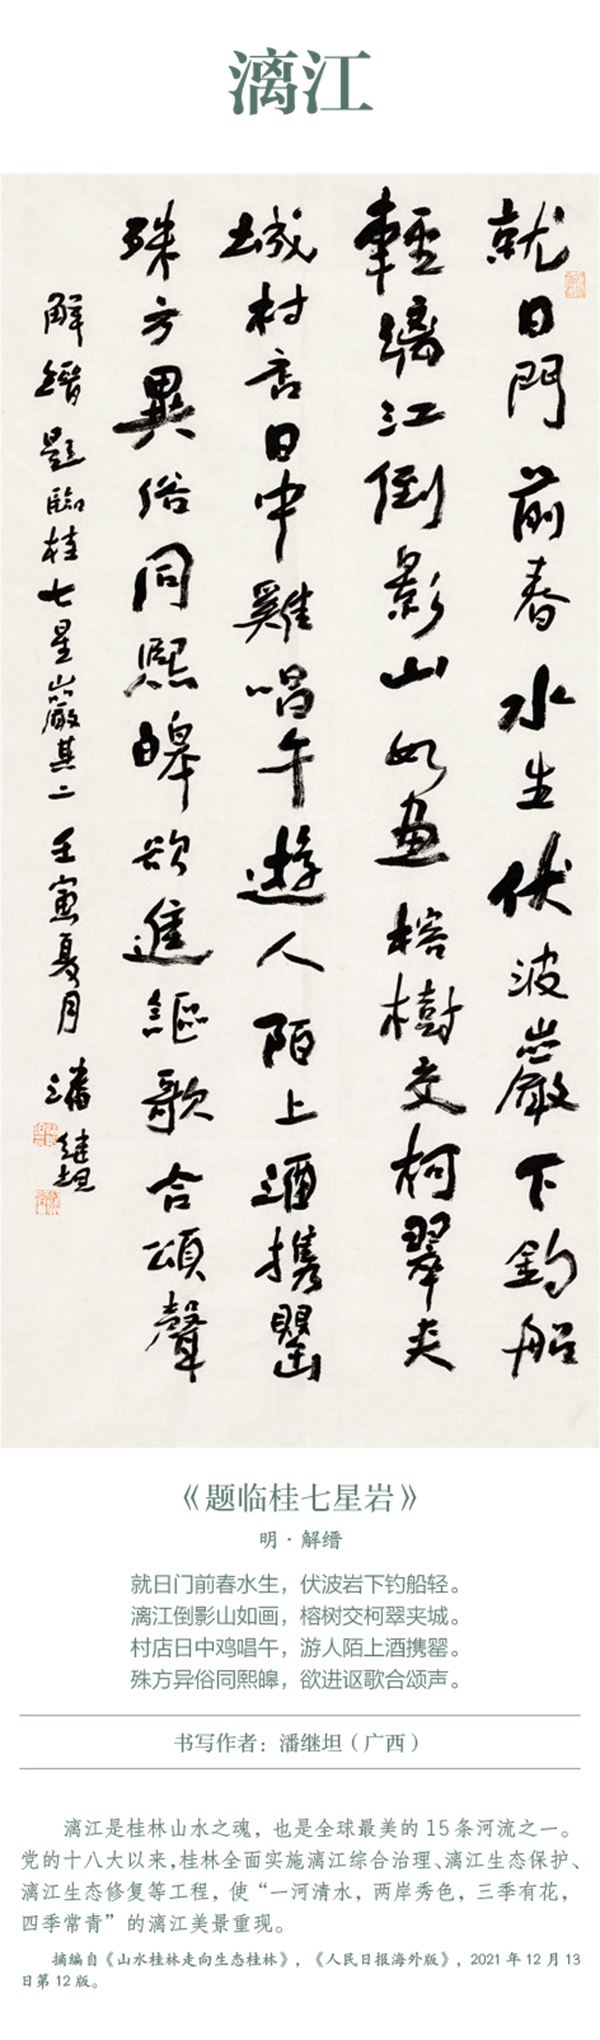 中国书协主题创作书法系列展——美丽中国插图11中国题字网